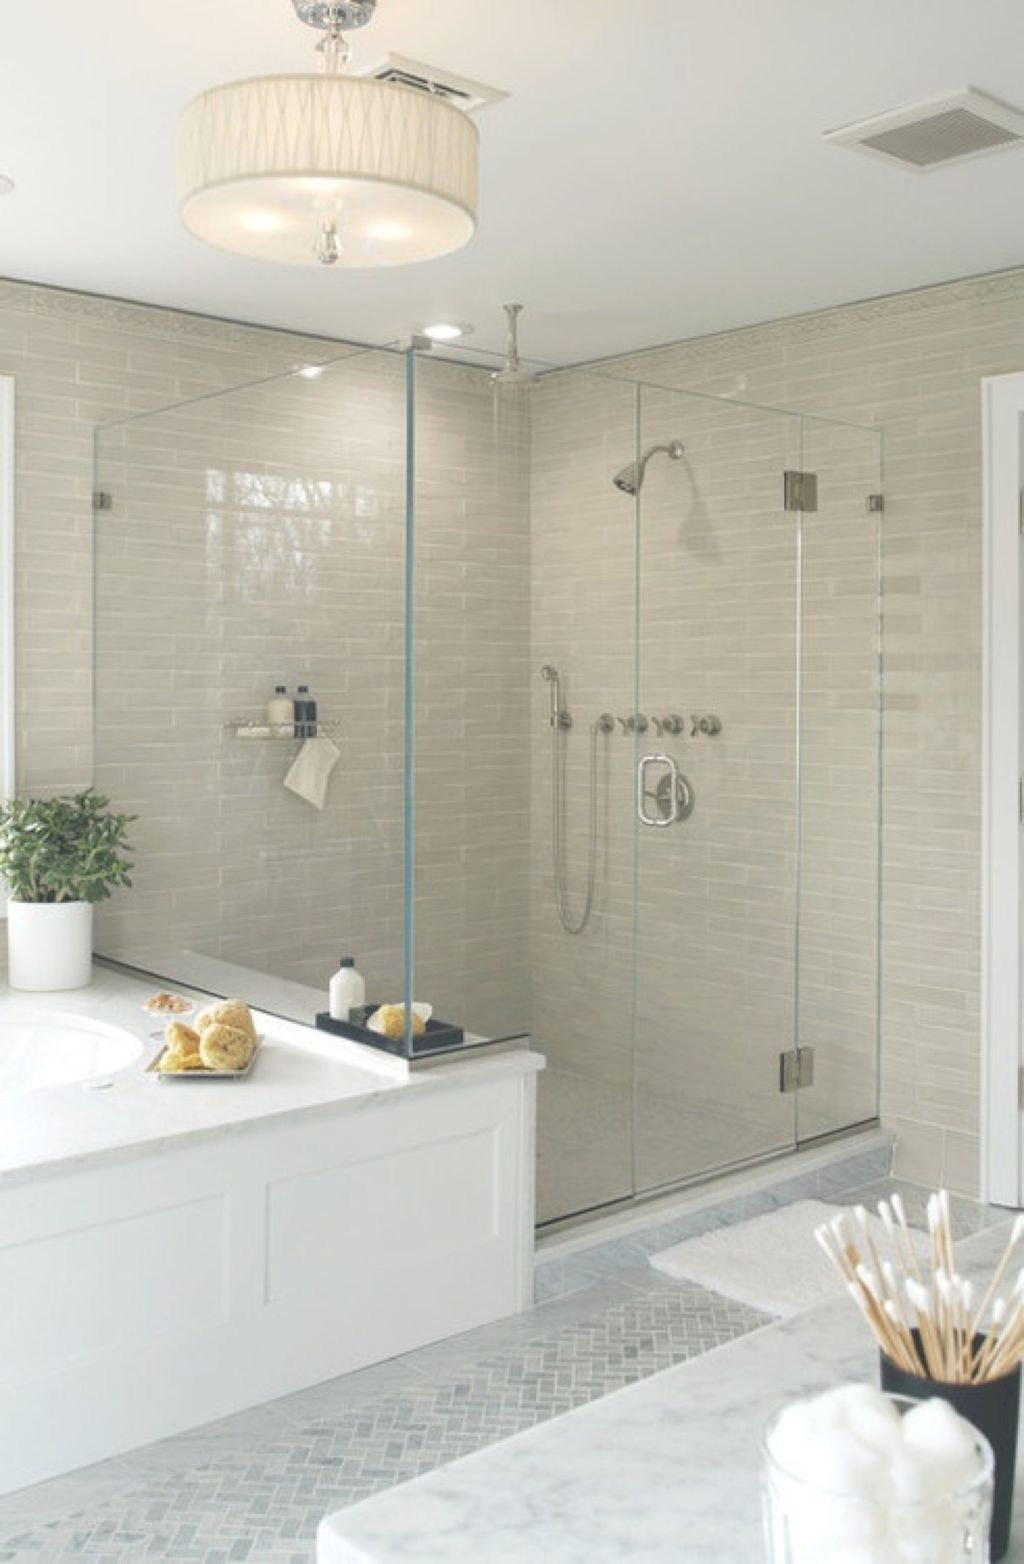  Gạch màu be nhạt trong không gian tắm kết hợp với đèn treo tăng sự ấm áp cho phòng tắm trung tính này.